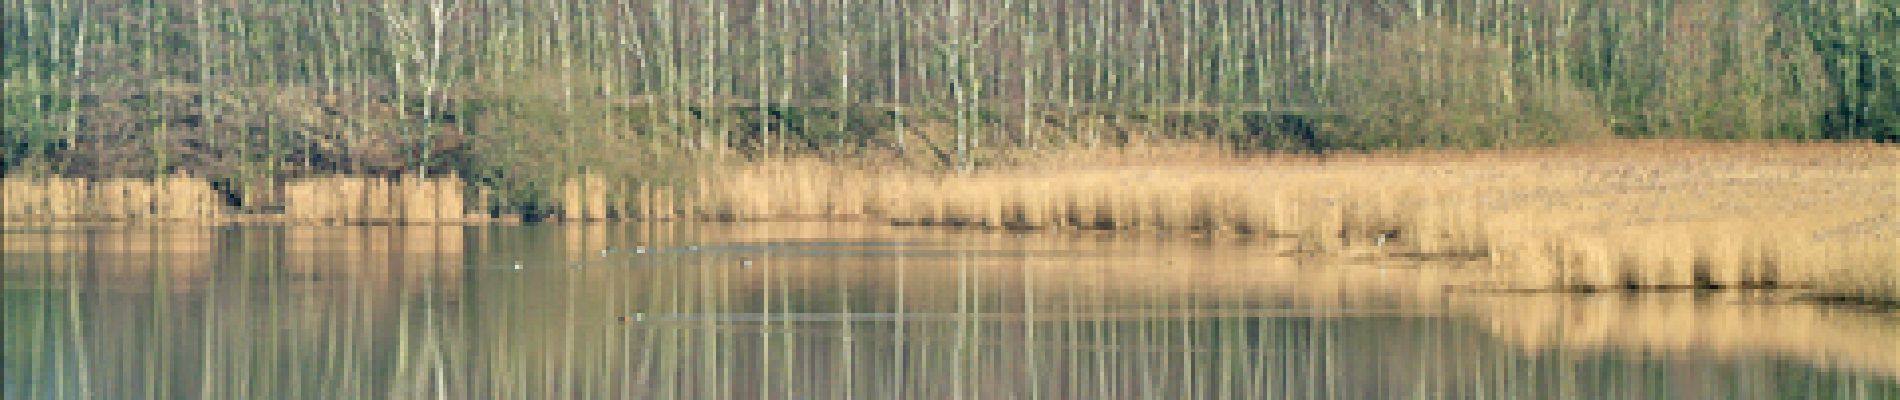 POI Bernissart - 1 - Un étang bordé d'arbres. Le bihoreau gris - Photo